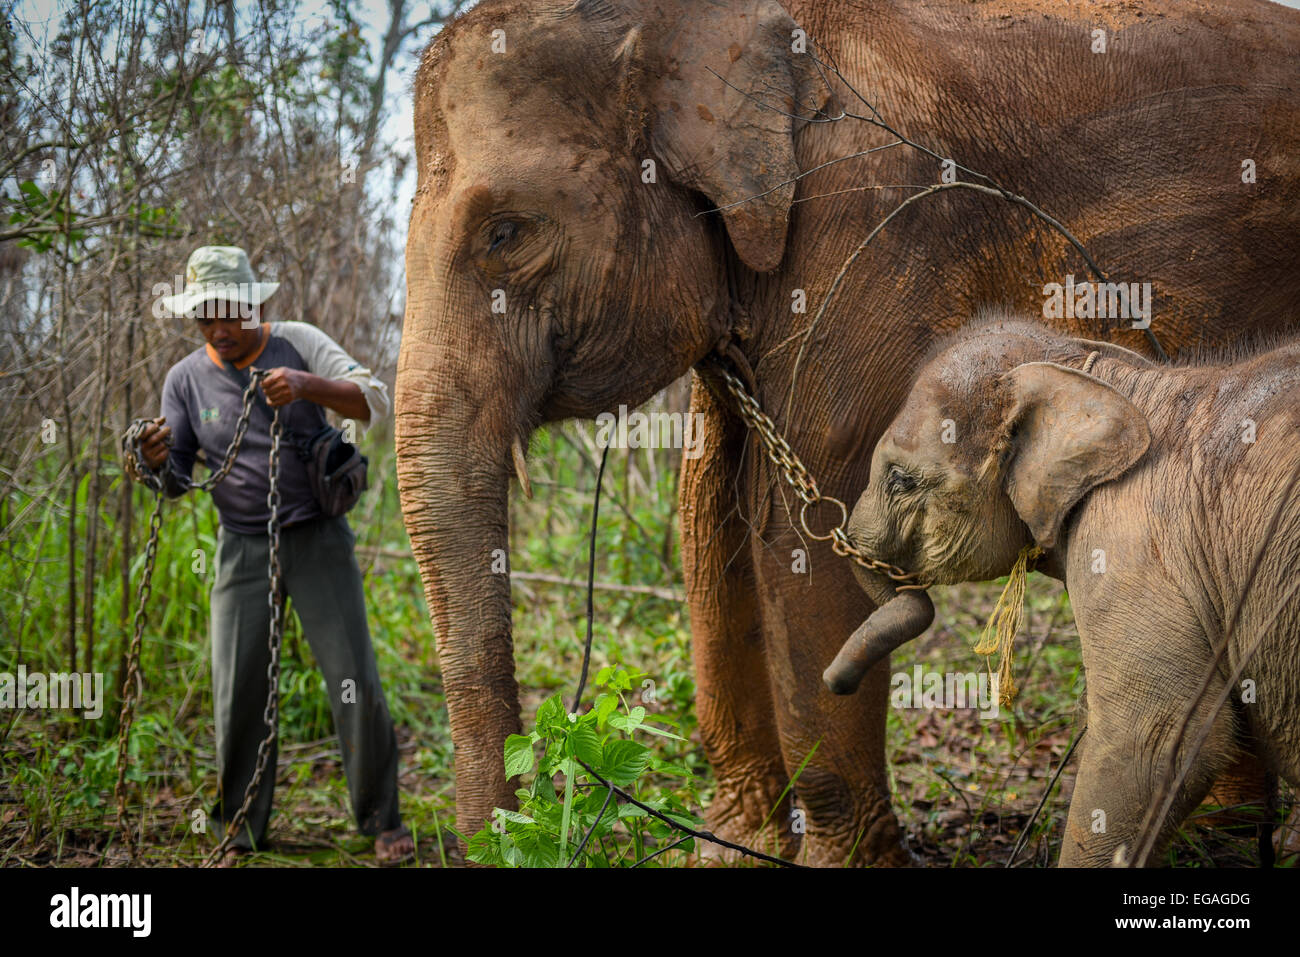 Rebo, un mahout e un ranger del parco nazionale, si prepara a riportare gli elefanti di Sumatra al centro degli elefanti dopo aver mangiato sulla prateria. Foto Stock